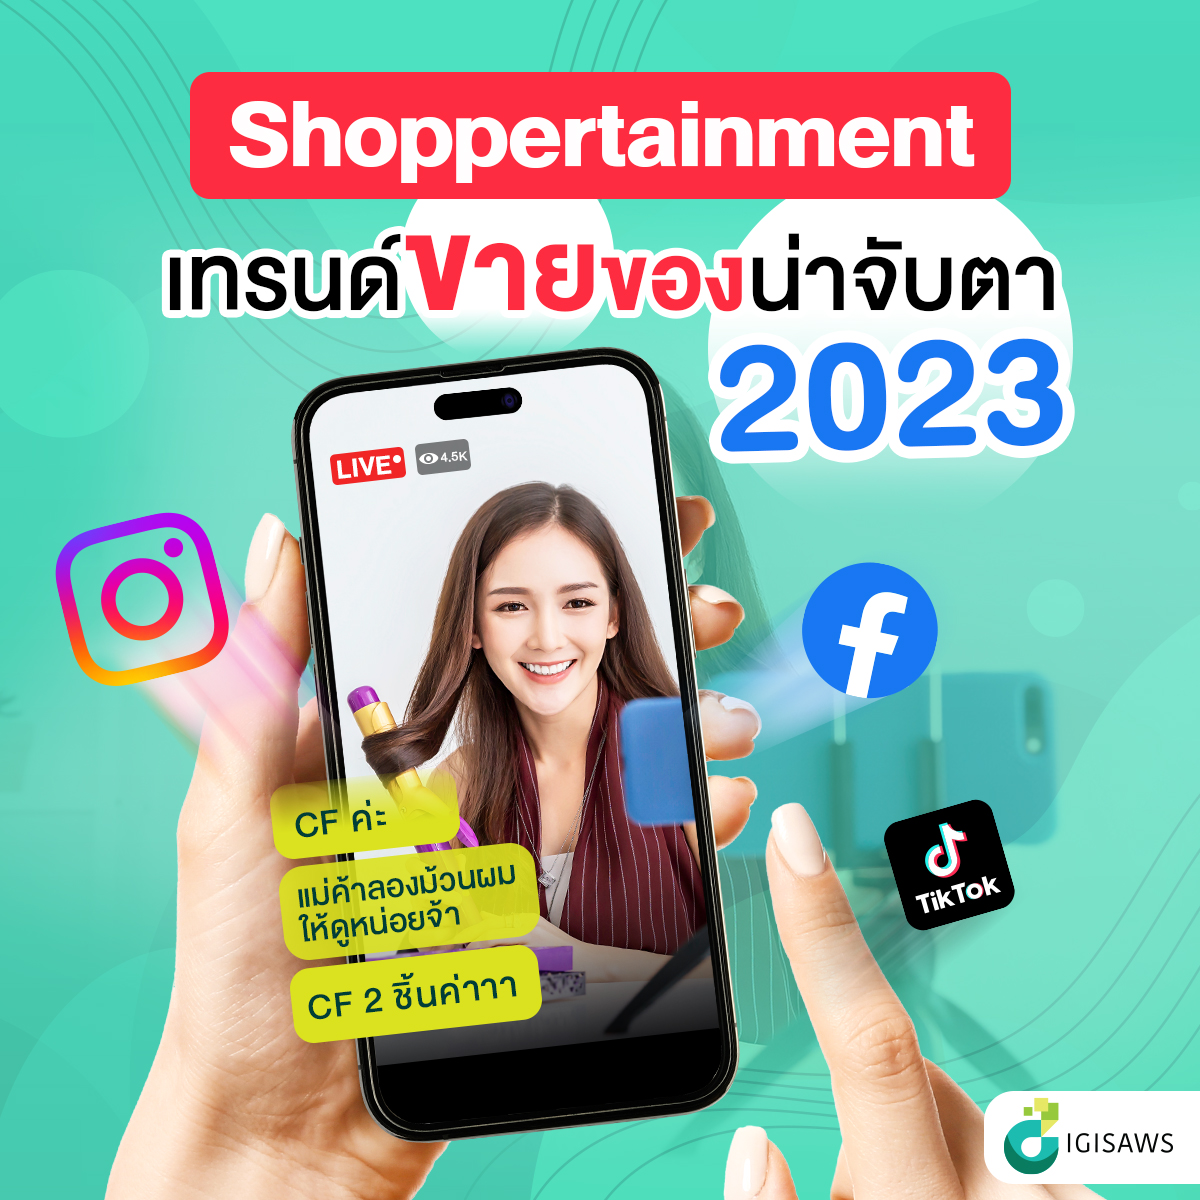 “Shoppertainment” เทรนด์การขายของที่น่าจับตาในปี 2023